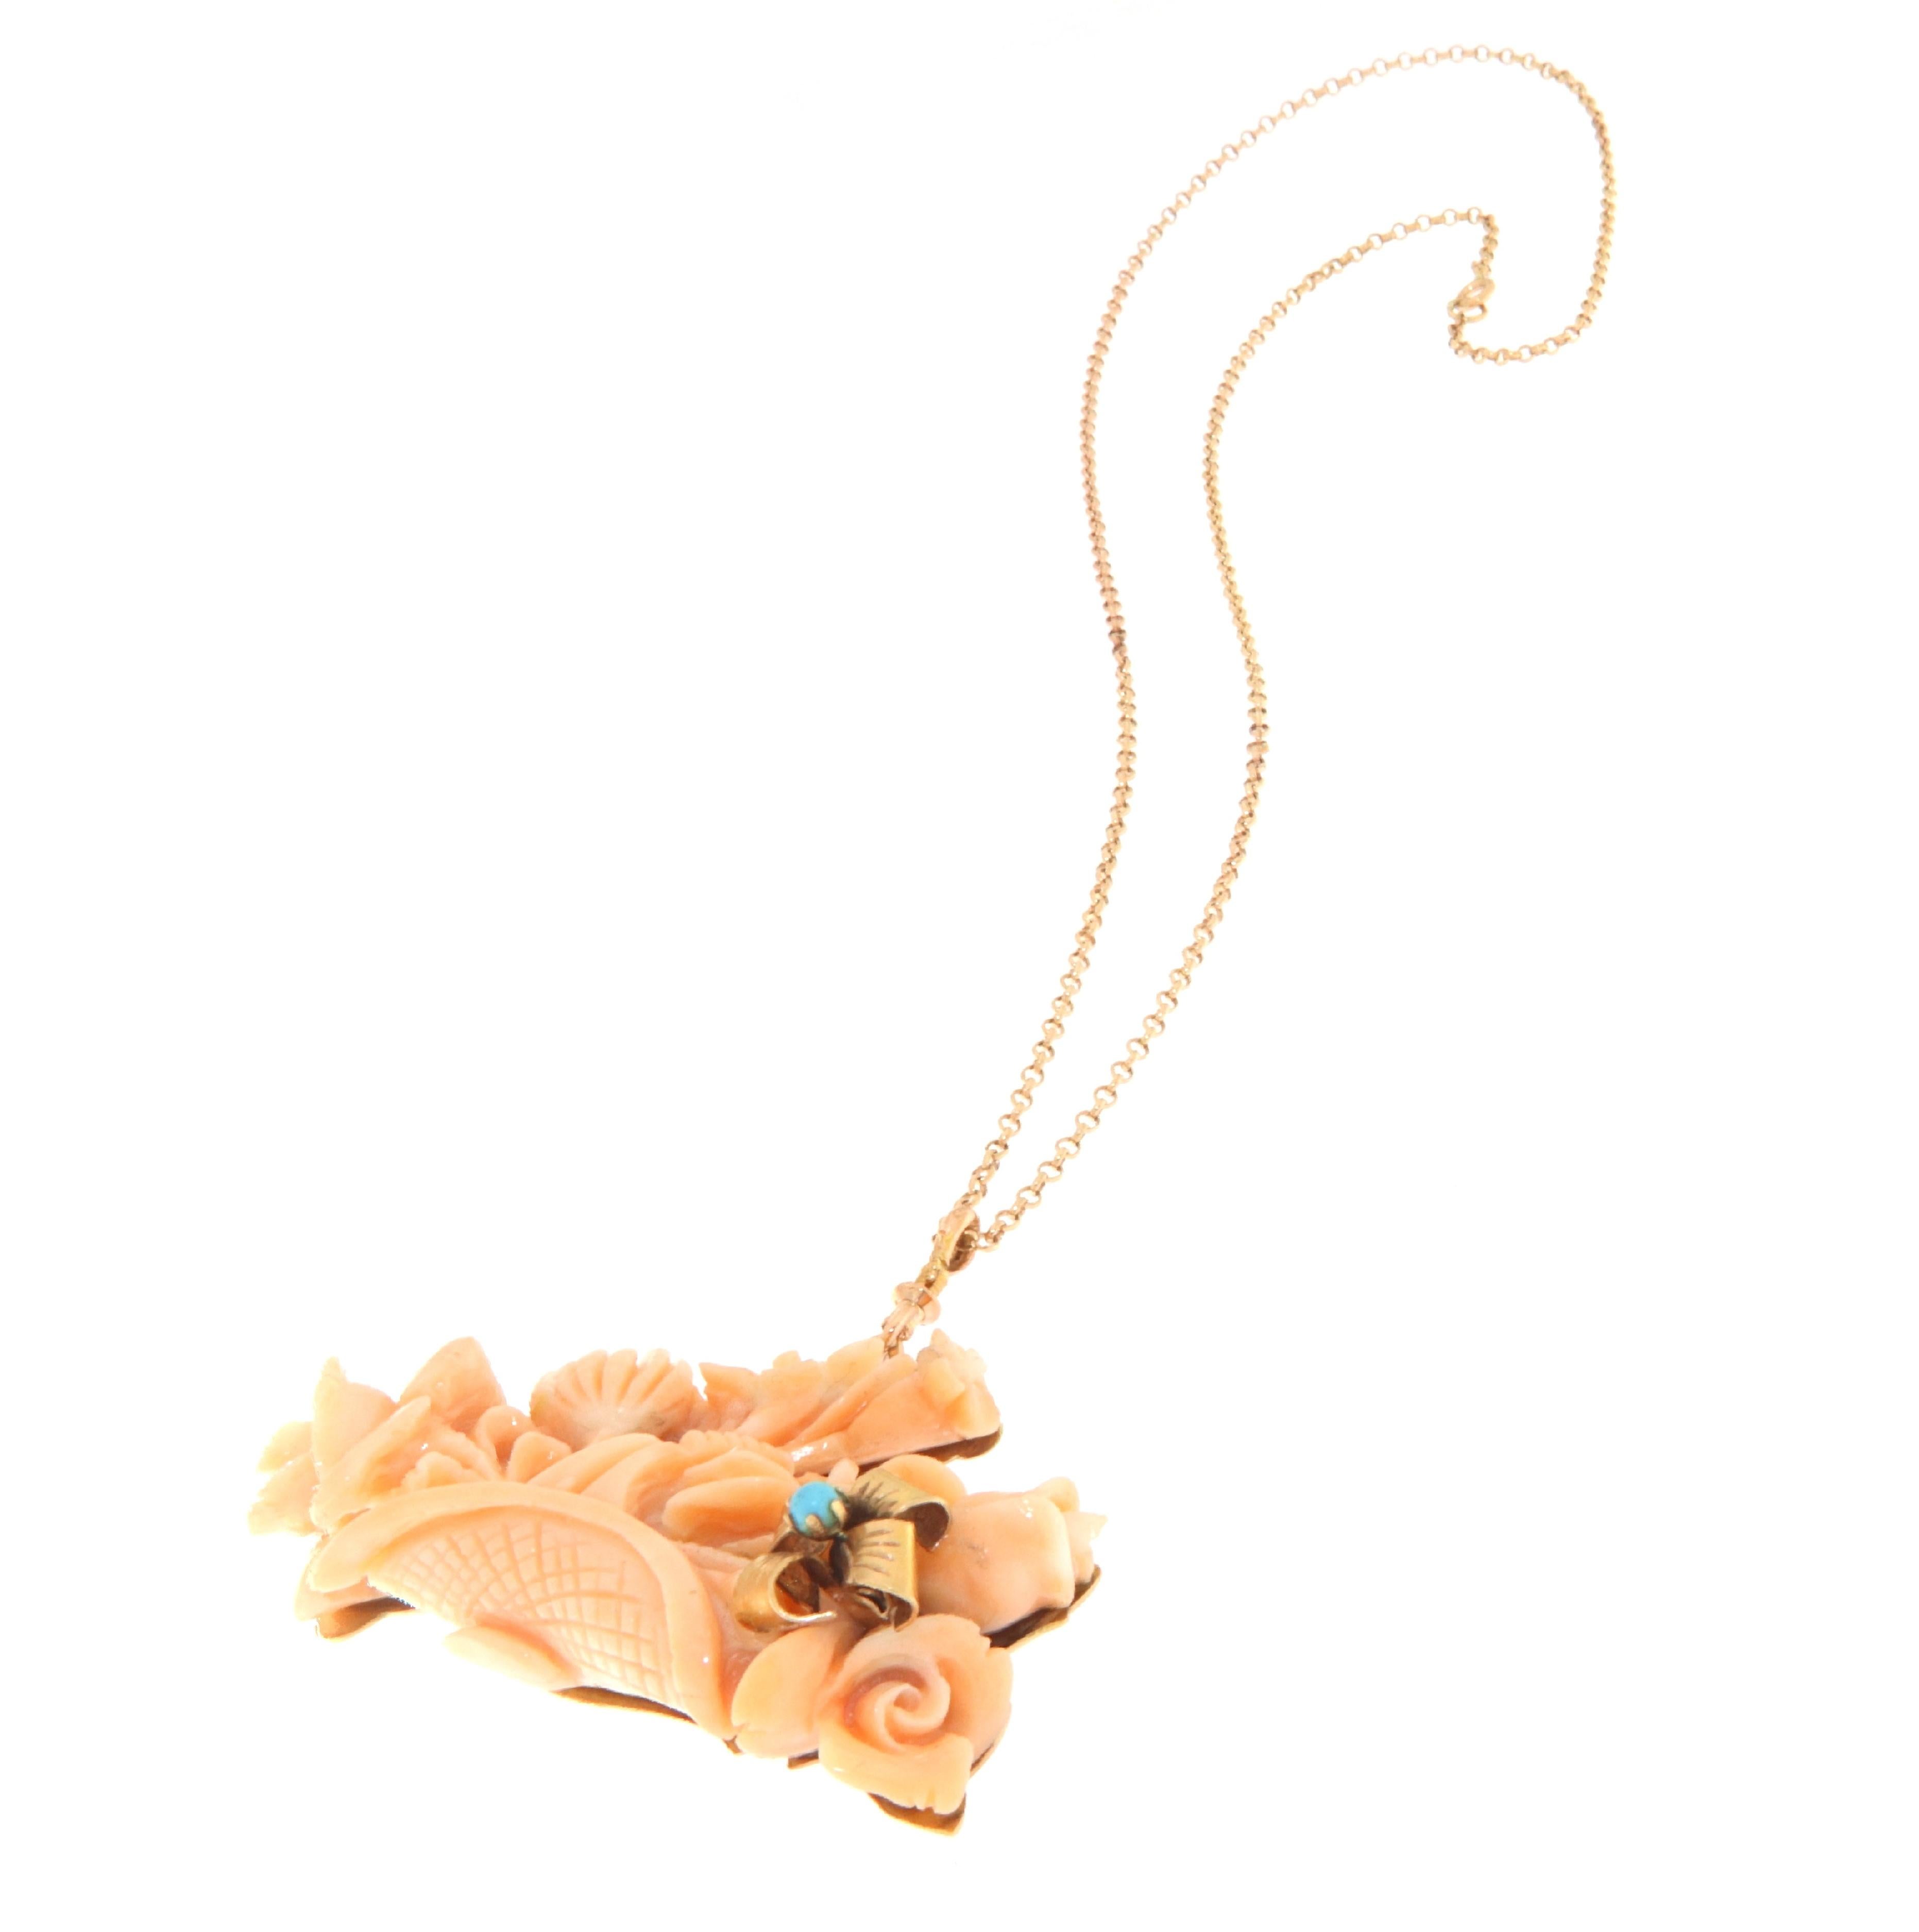 Ce collier exquis, réalisé en or jaune 14 carats, présente une pièce centrale en corail, minutieusement sculptée en un délicat bouquet de fleurs et de feuillages, mettant en valeur la beauté naturelle et la profondeur du corail. Une petite turquoise